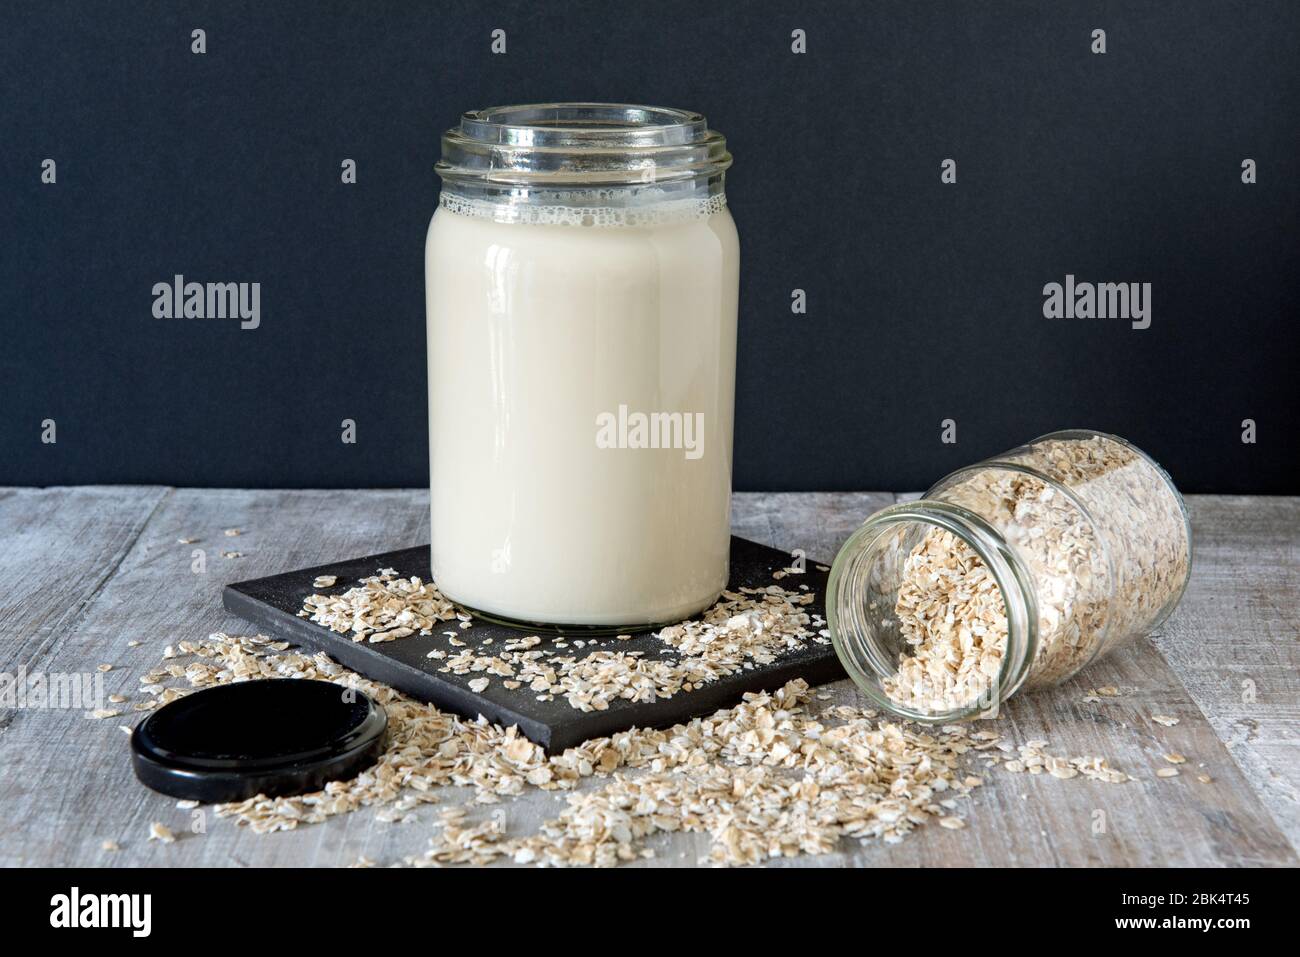 Vegane Hafermilch oder trinken Sie im Glas auf schwarzer Fliese mit verschütteten Hafer und Deckel vor schwarzem Hintergrund links Stockfoto